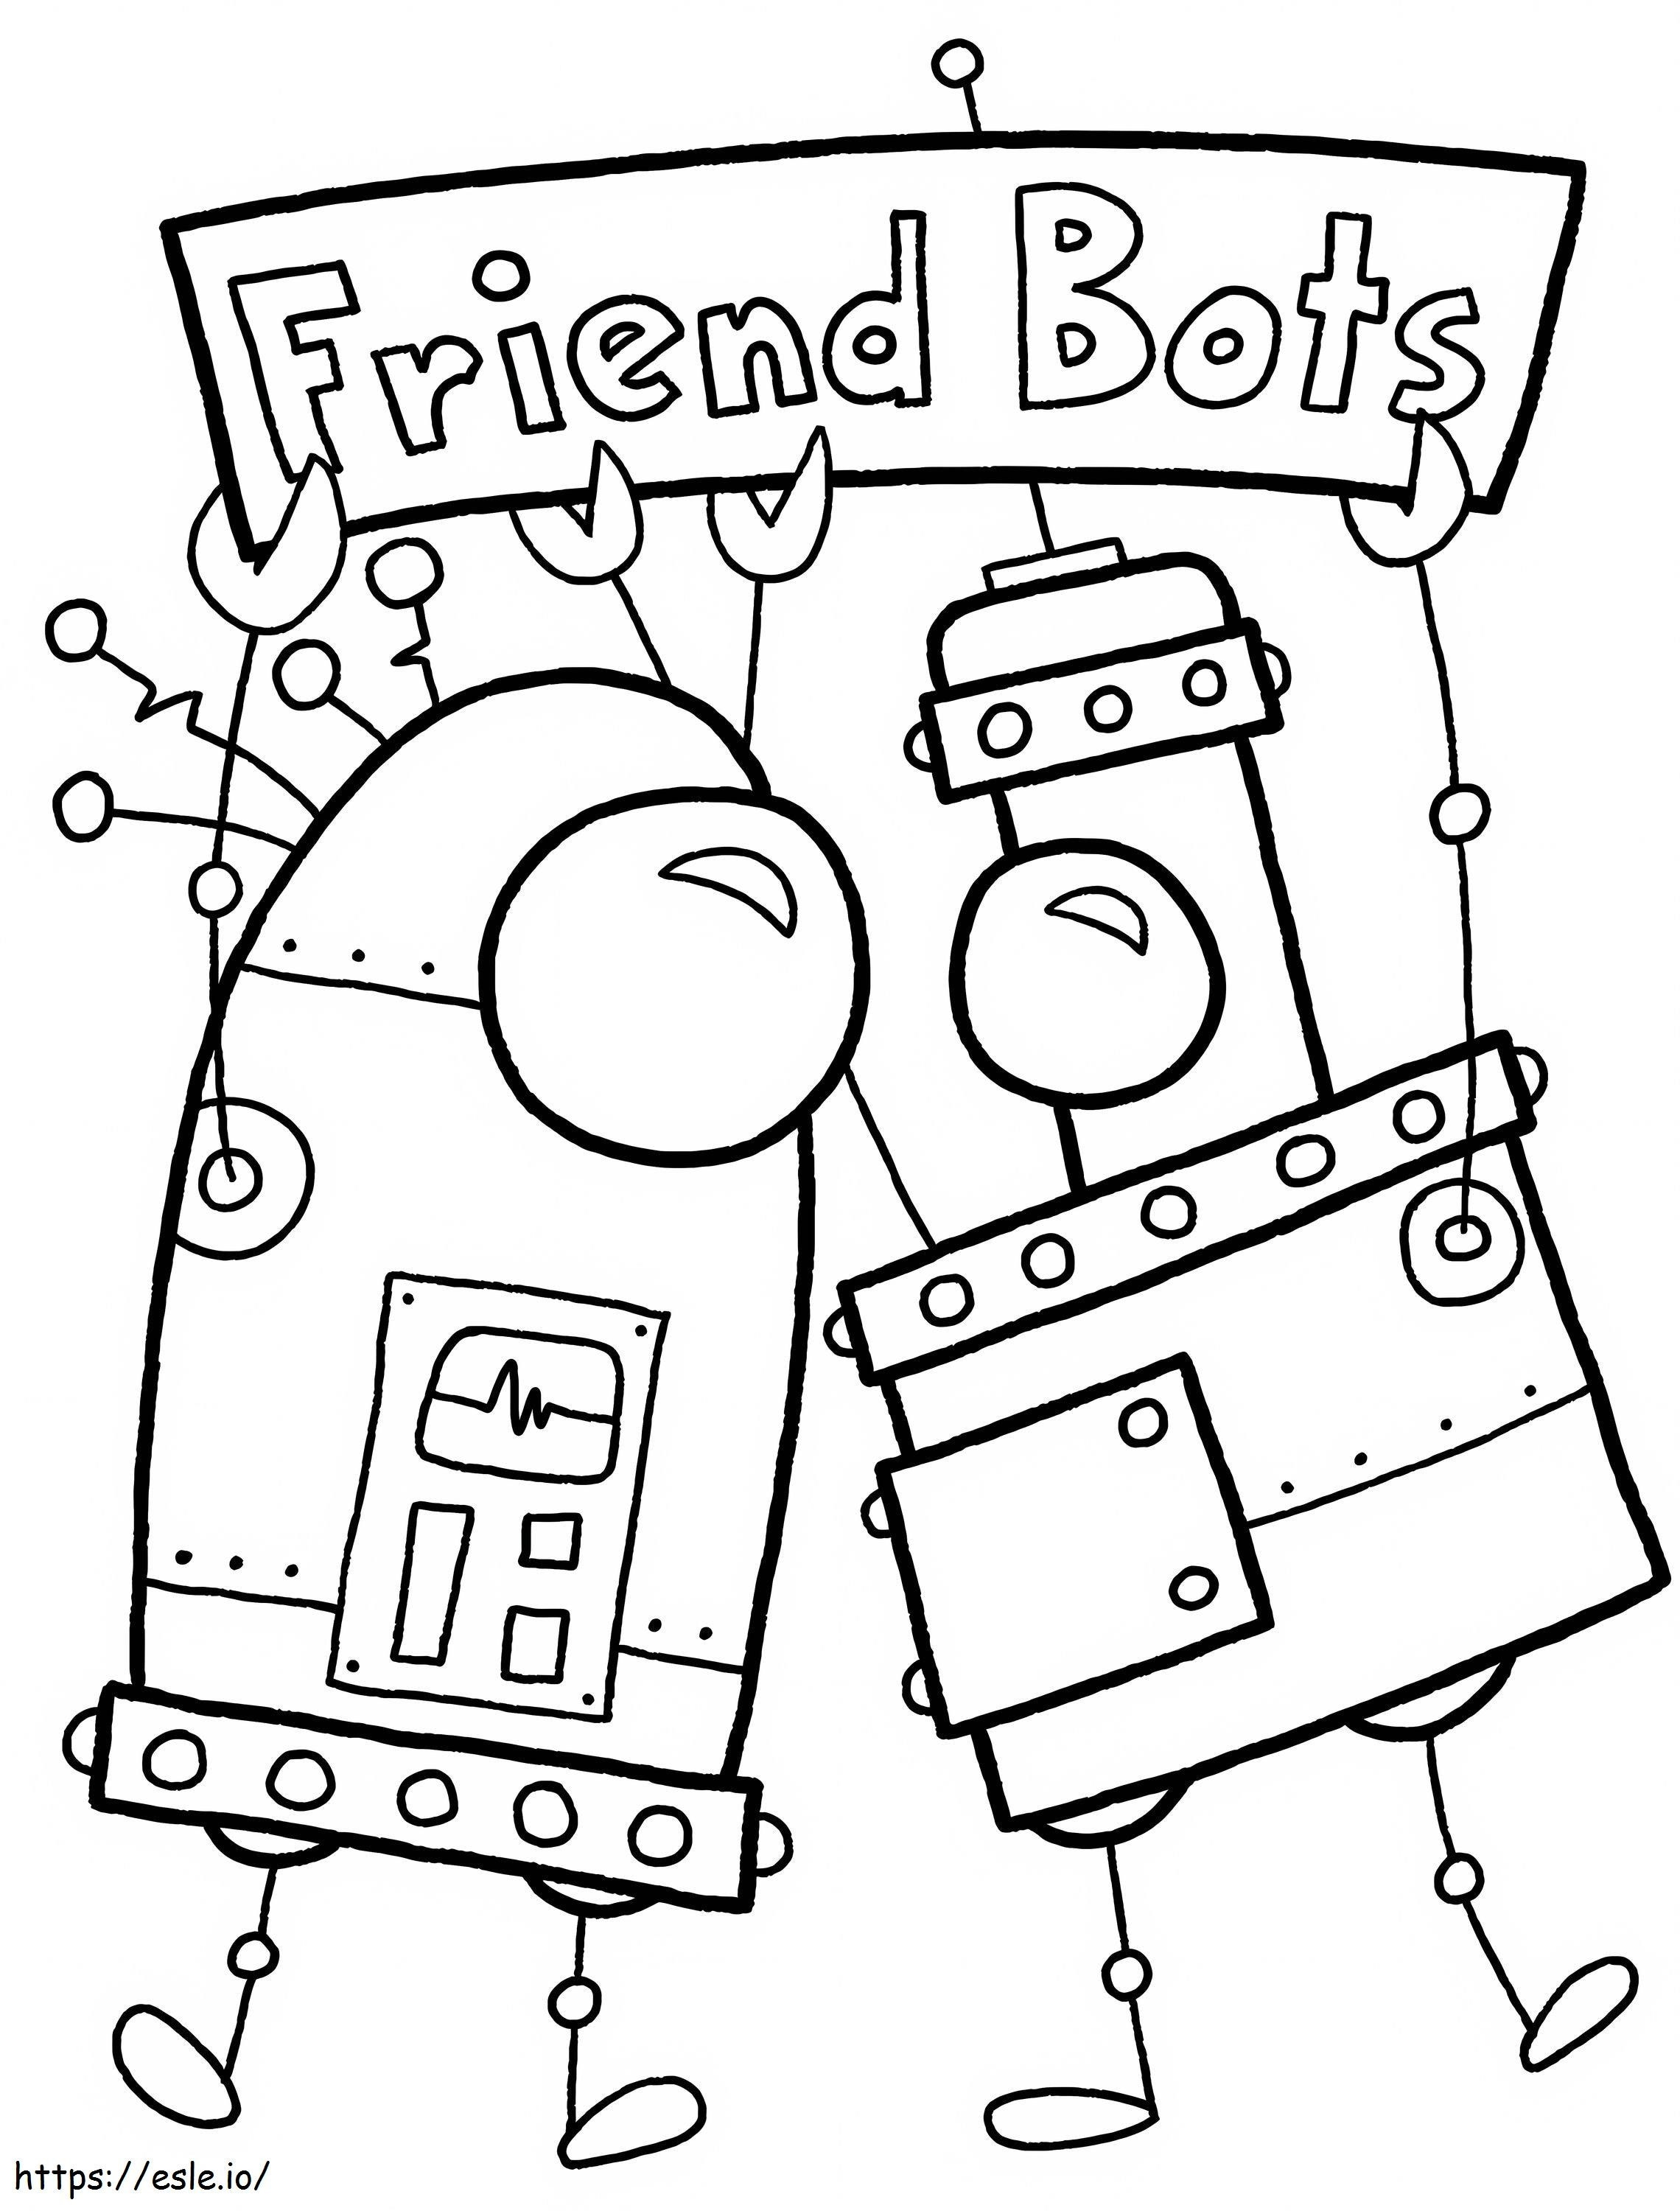 Freund-Bots ausmalbilder